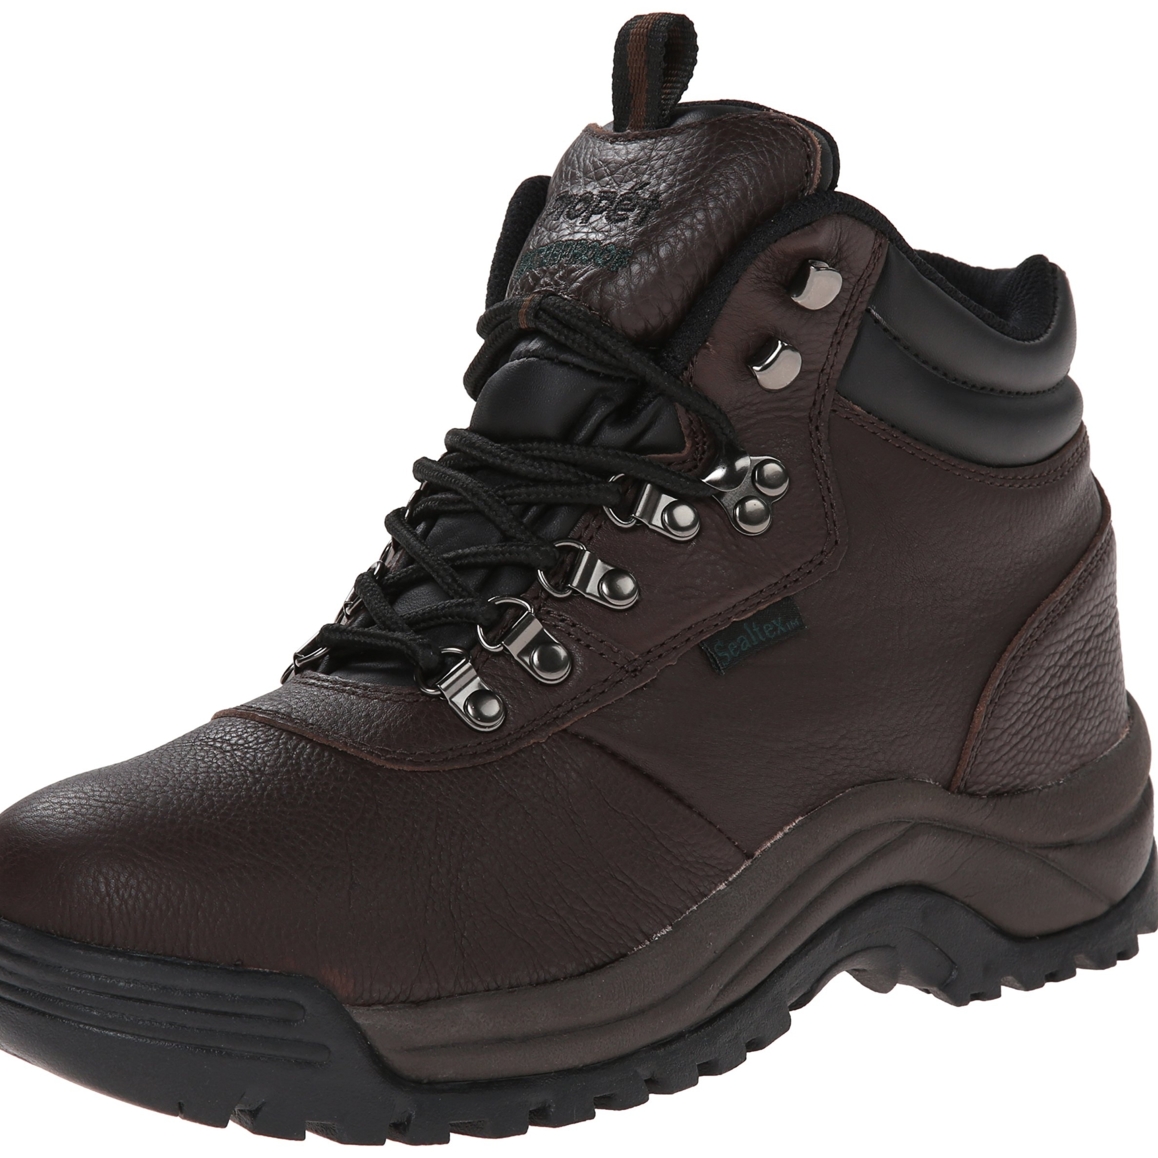 Propet Men's Cliff Walker Hiking Boot Bronco Brown - M3188BRO - BRONCO BROWN, 10-D